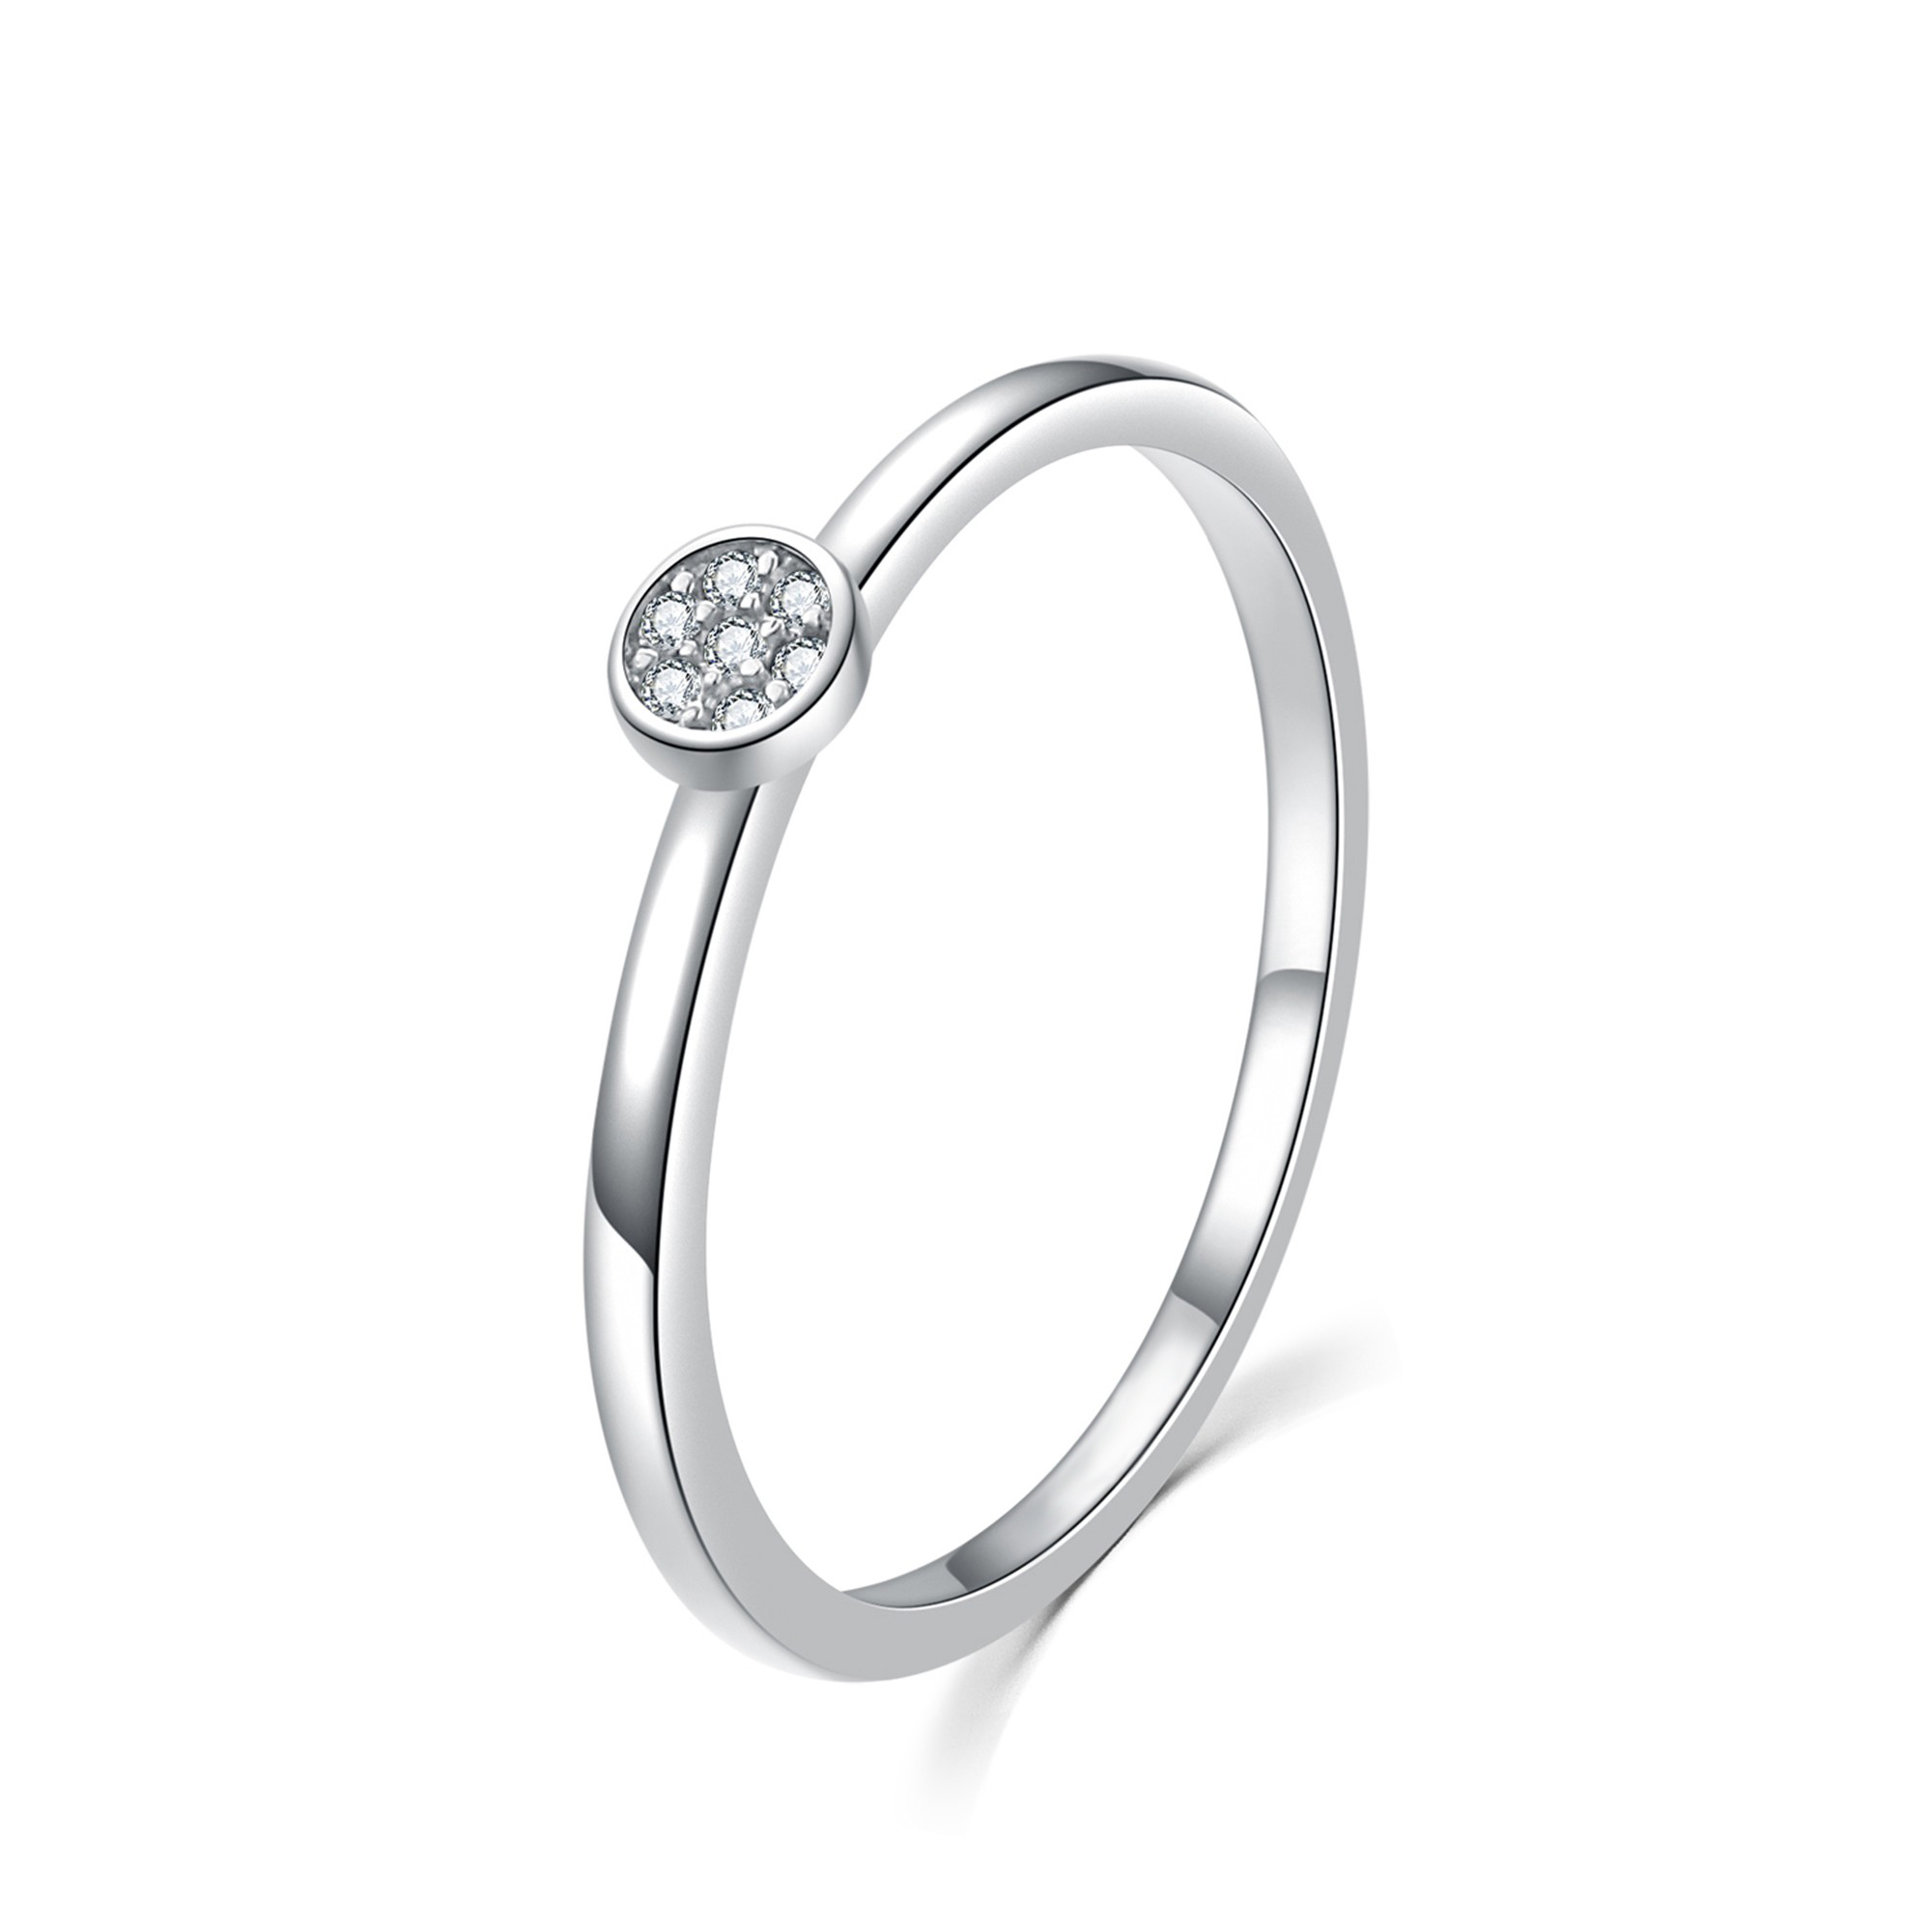 MOISS Moiss stříbrný prsten s bílými zirkony BEAUTY R0002053 Velikost 52 mm R0002057